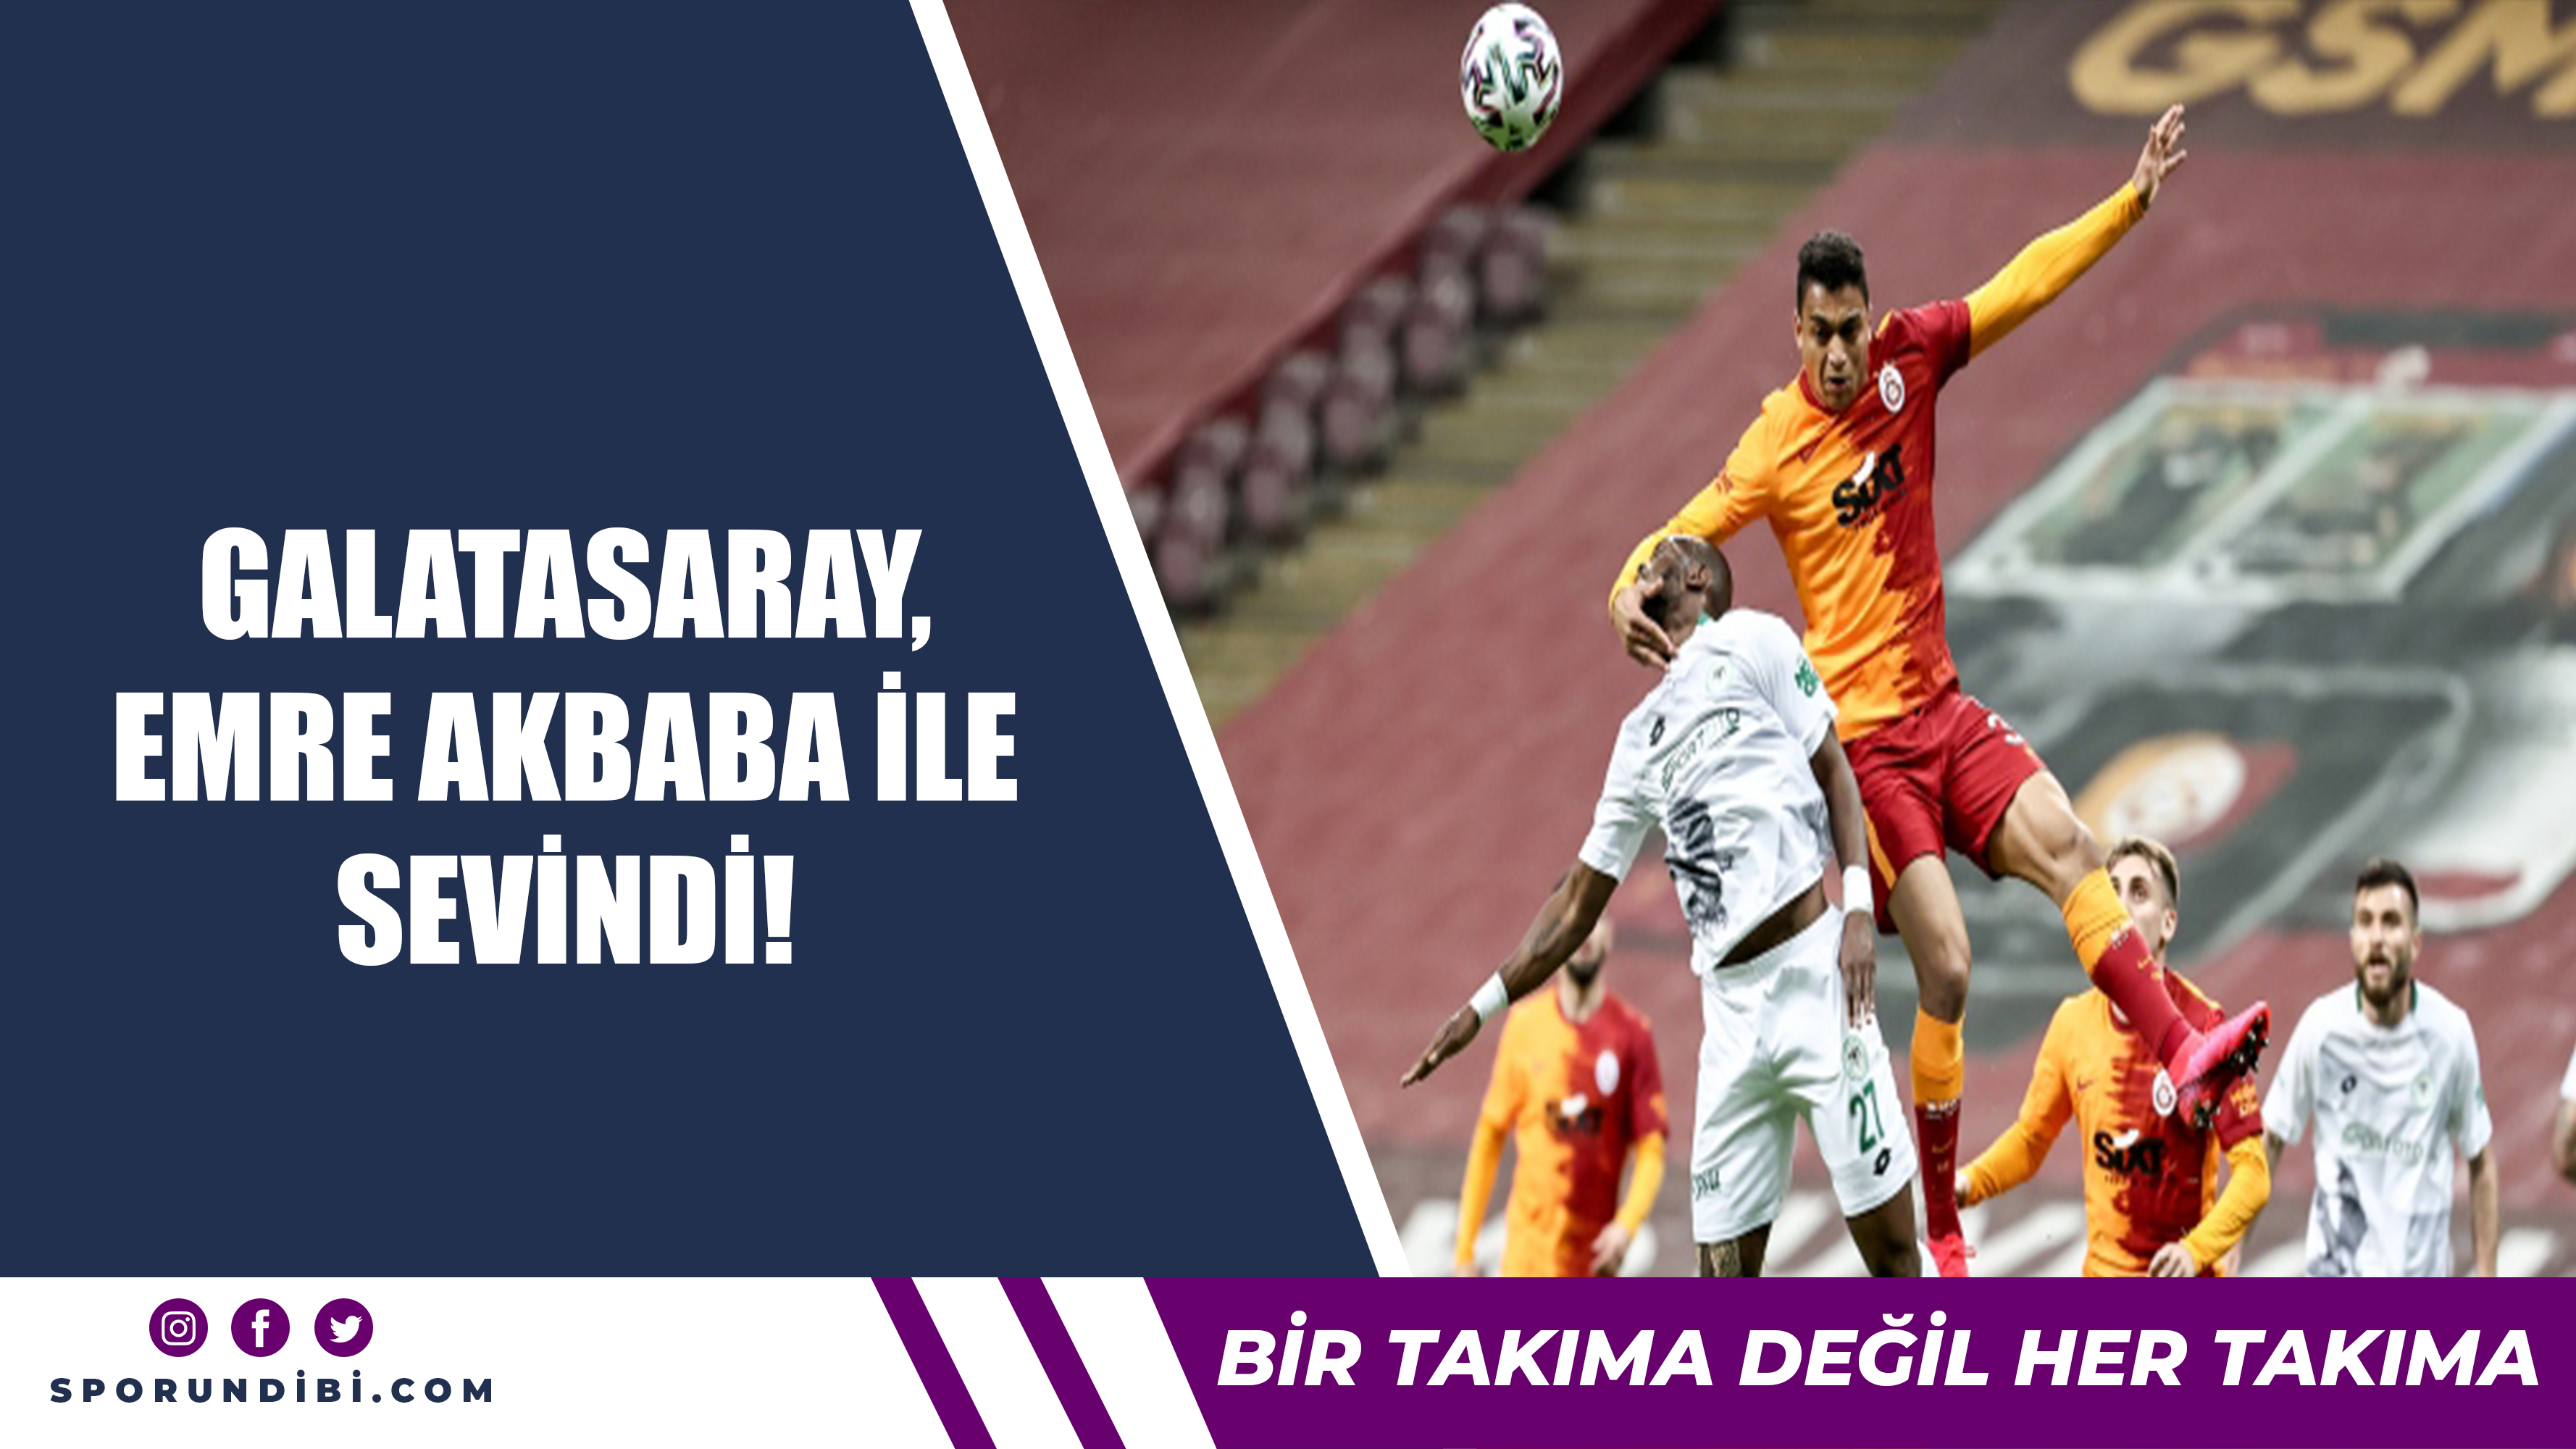 Galatasaray, Emre Akbaba ile sevindi!